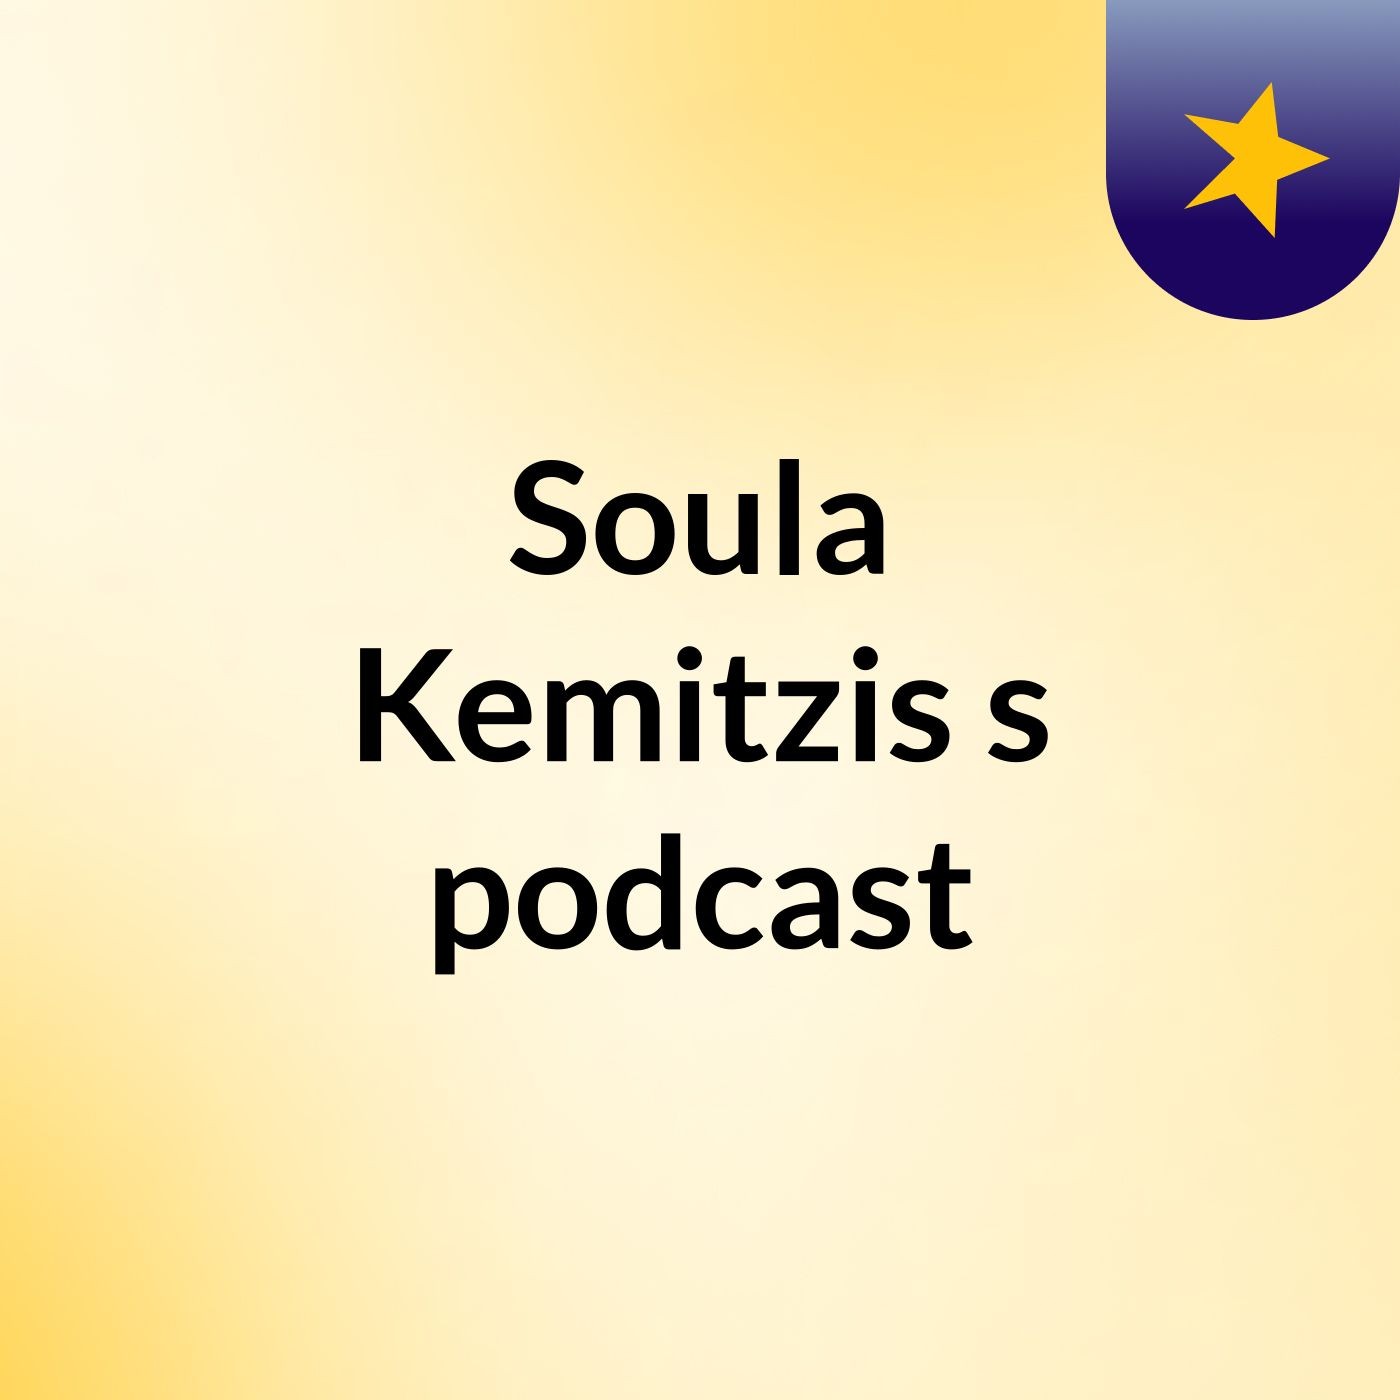 Soula Kemitzis's podcast